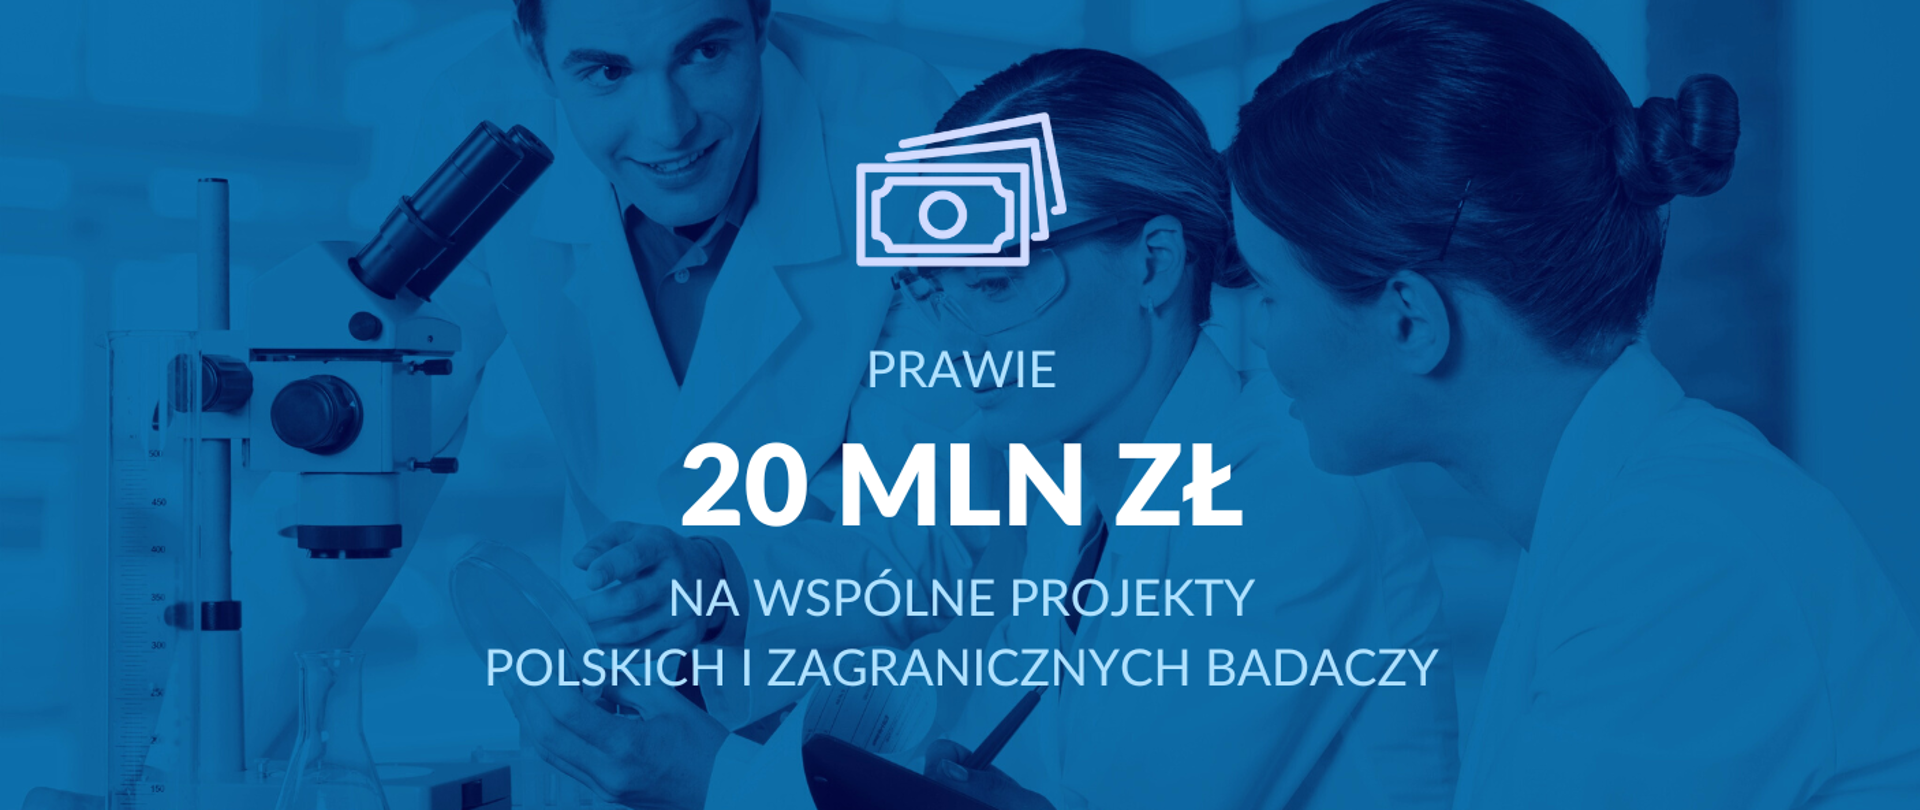 Grafika - na niebieskim tle sylwetki ludzi przy mikroskopie i napis Prawie 20 mln zł na wspólne projekty polskich i zagranicznych badaczy.